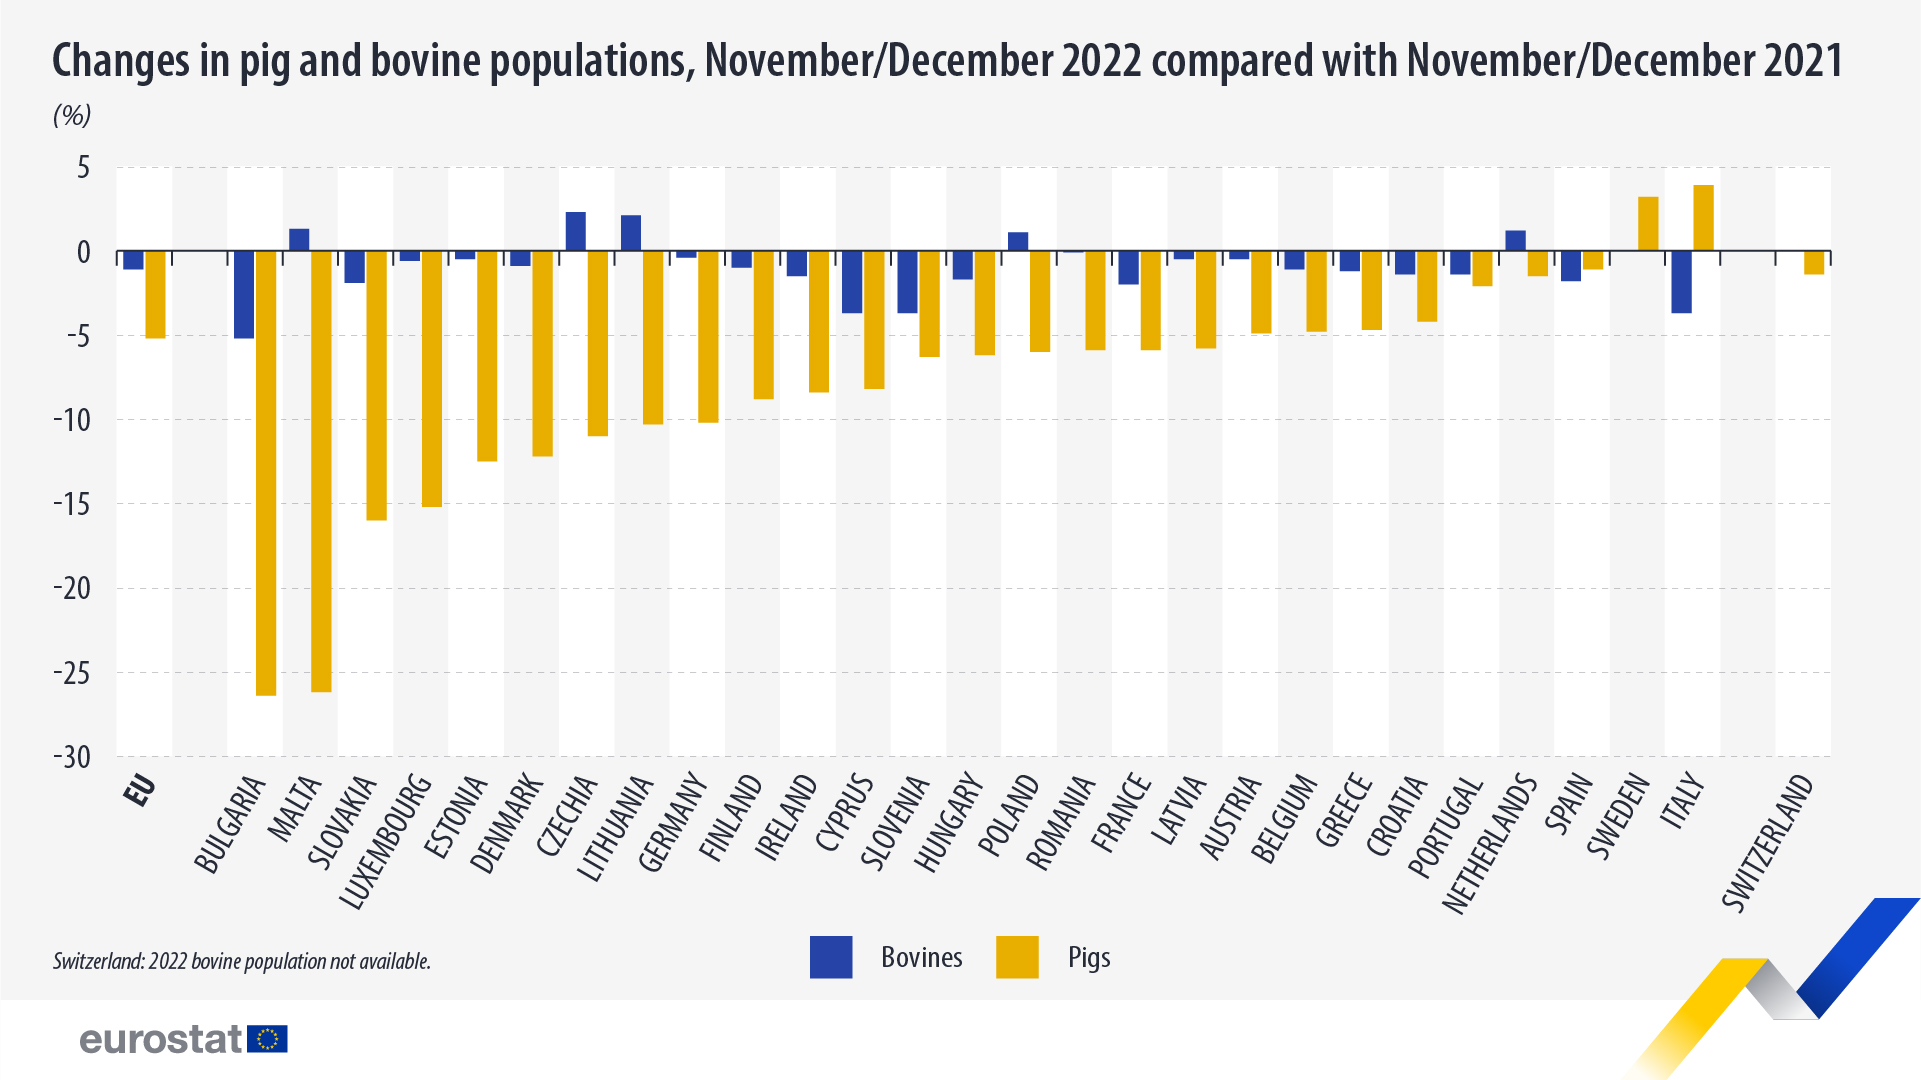 Γράφημα ράβδων: Μεταβολές στους πληθυσμούς χοίρων και βοοειδών, Νοέμβριος/Δεκέμβριος 2022 σε σύγκριση με Νοέμβριο/Δεκέμβριο 2021, σε %